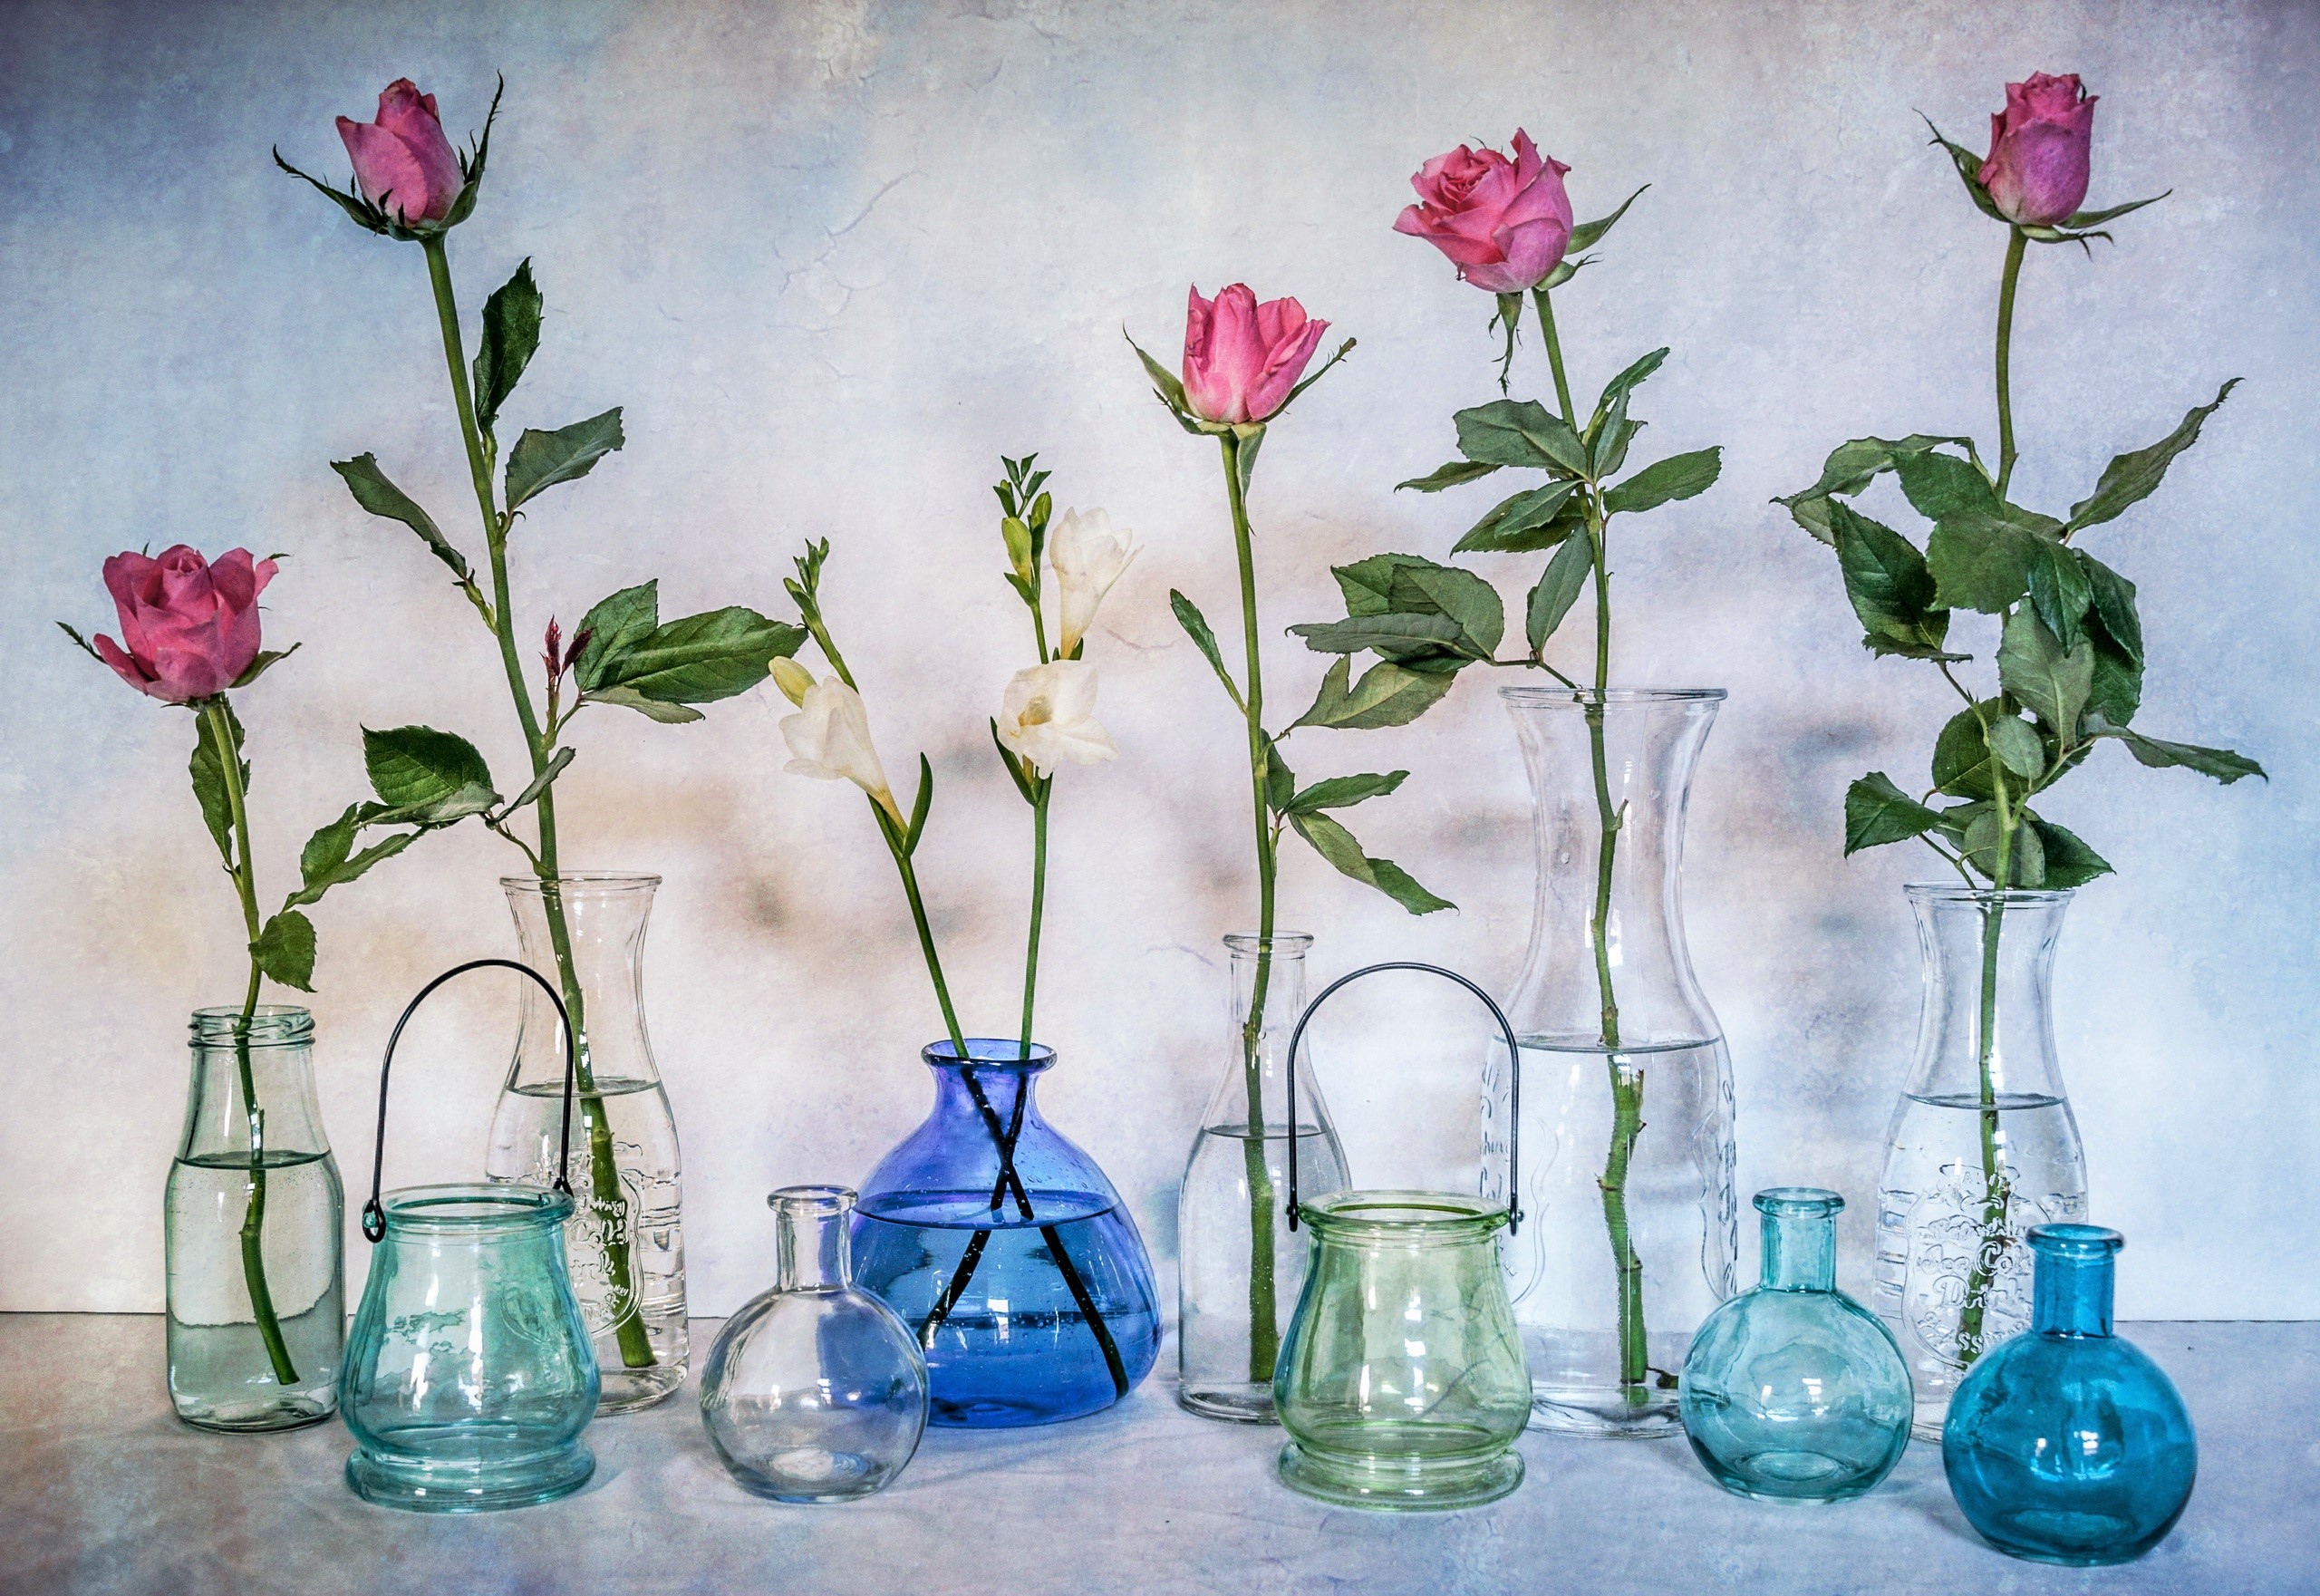 photography, still life, blue, colors, flower, jar, rose, vase